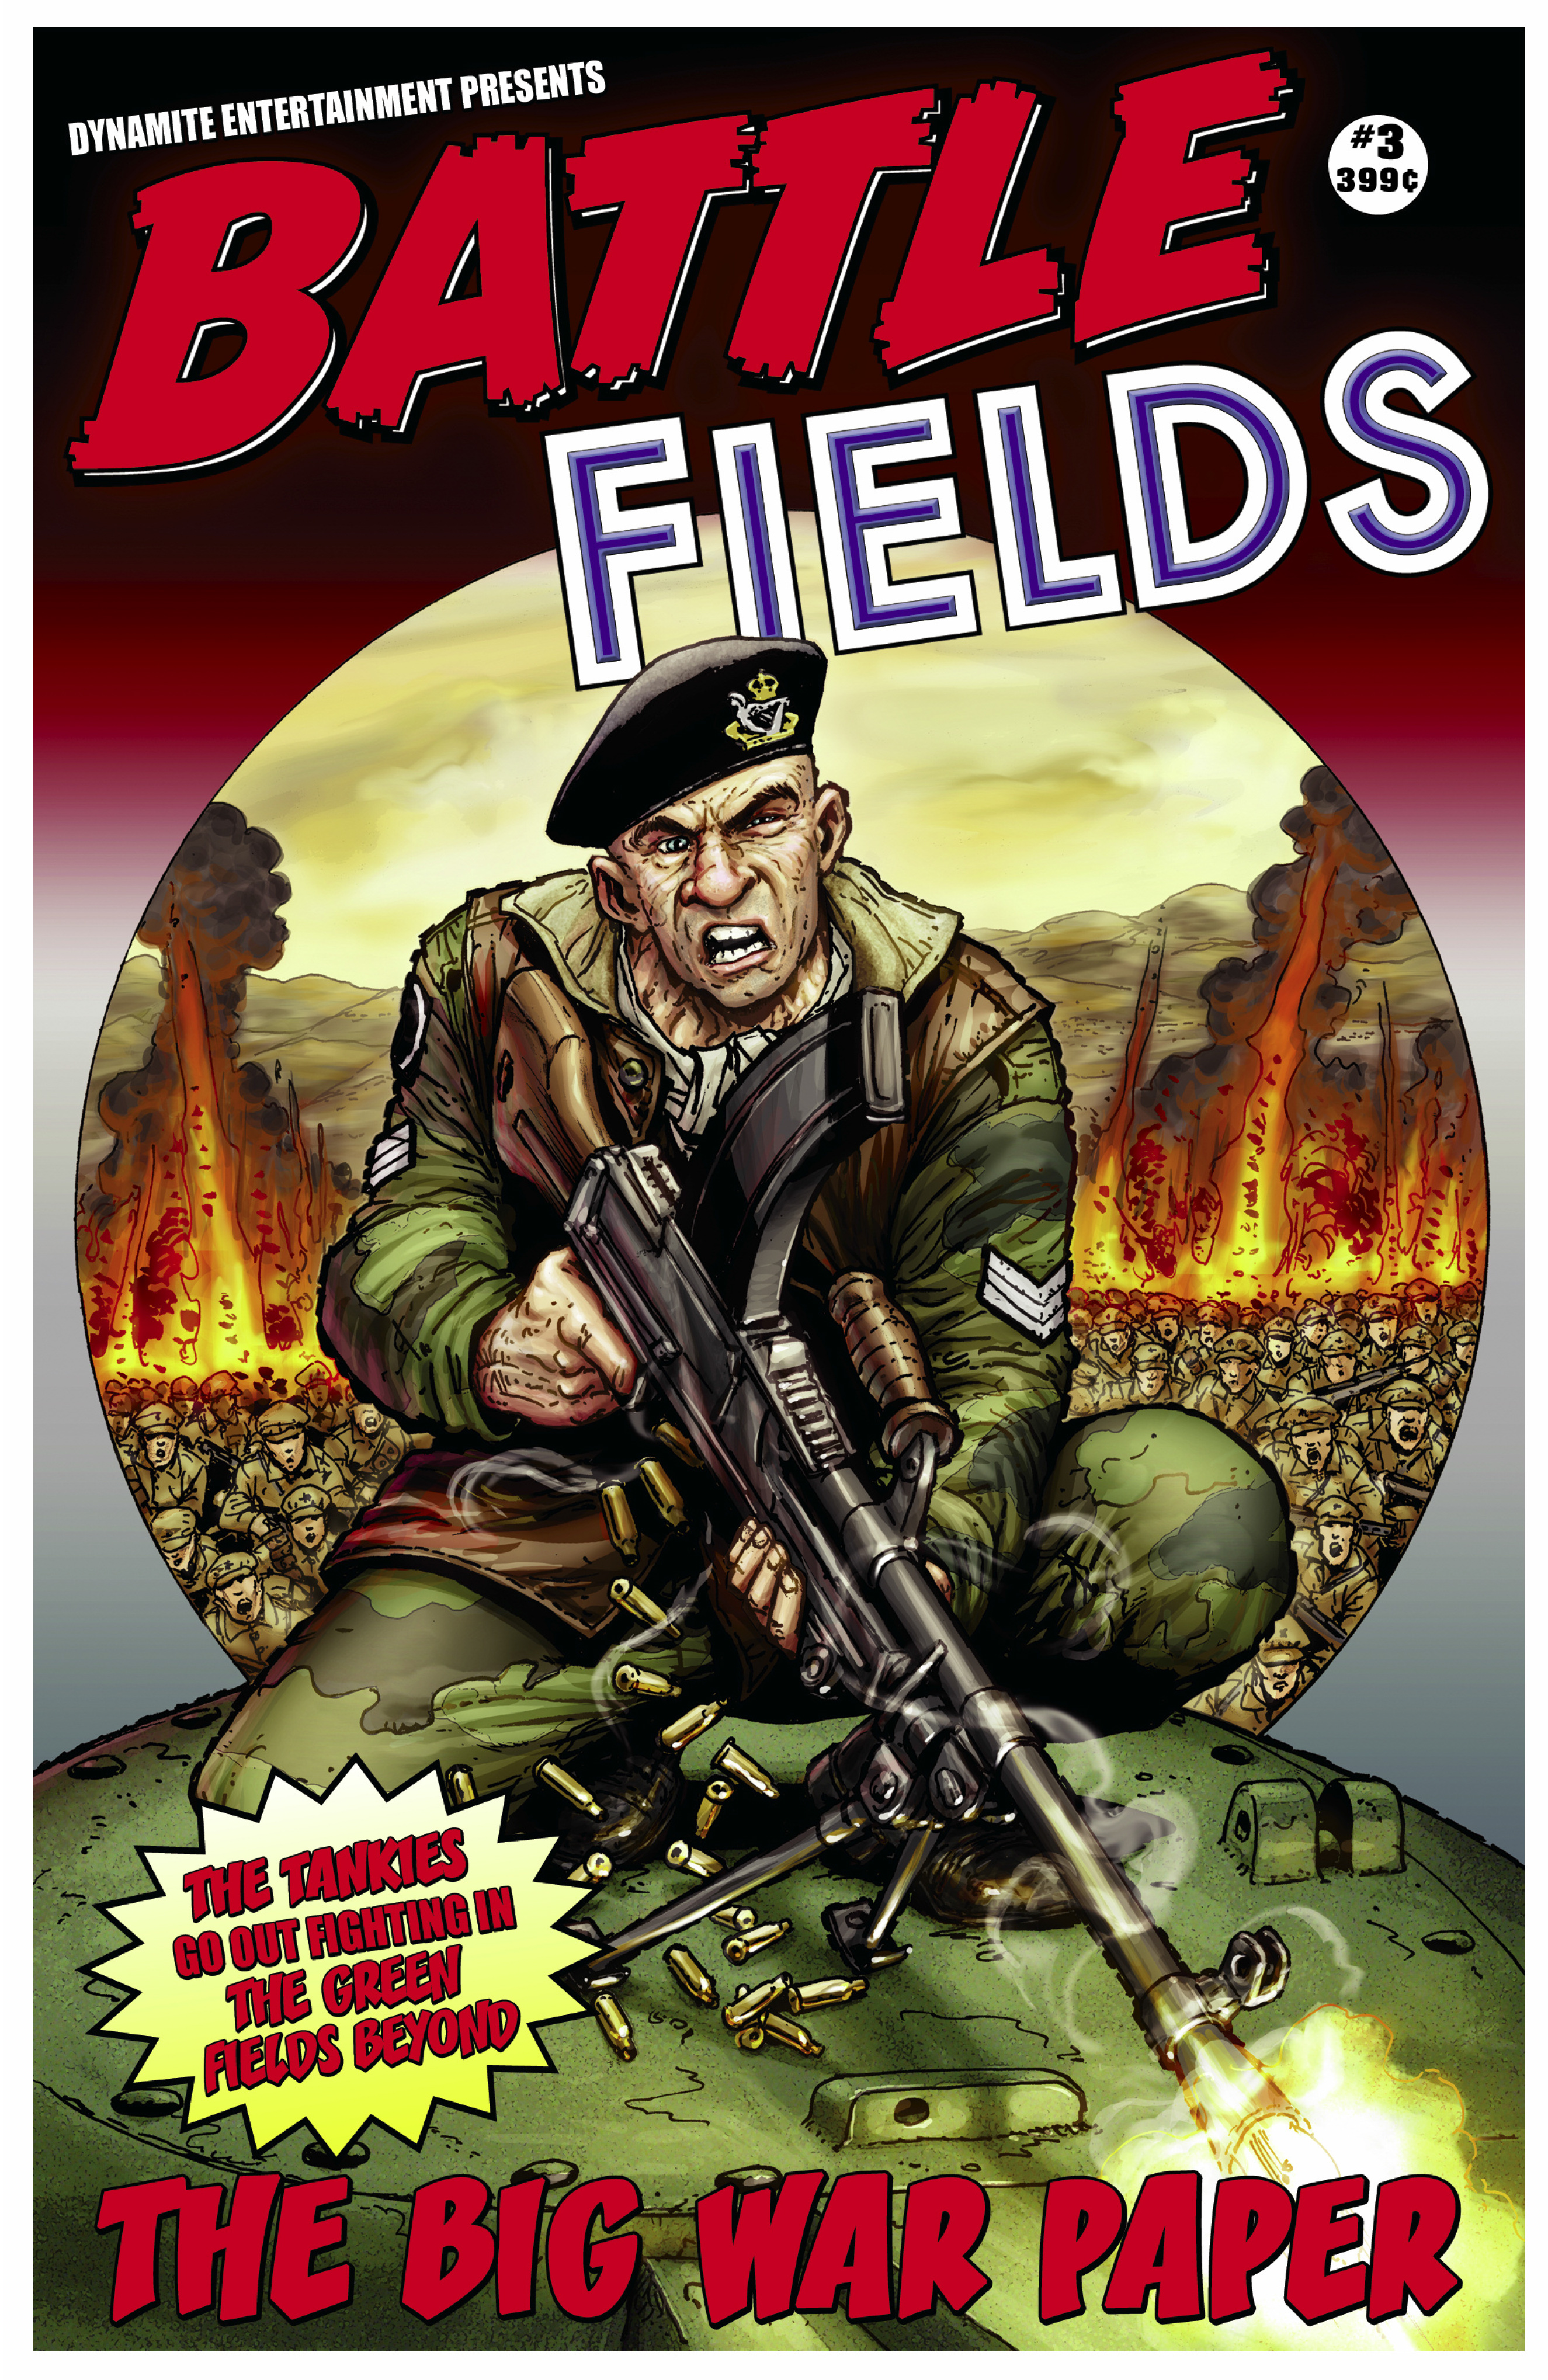 Read online Battlefields comic -  Issue # TPB 1 - 49